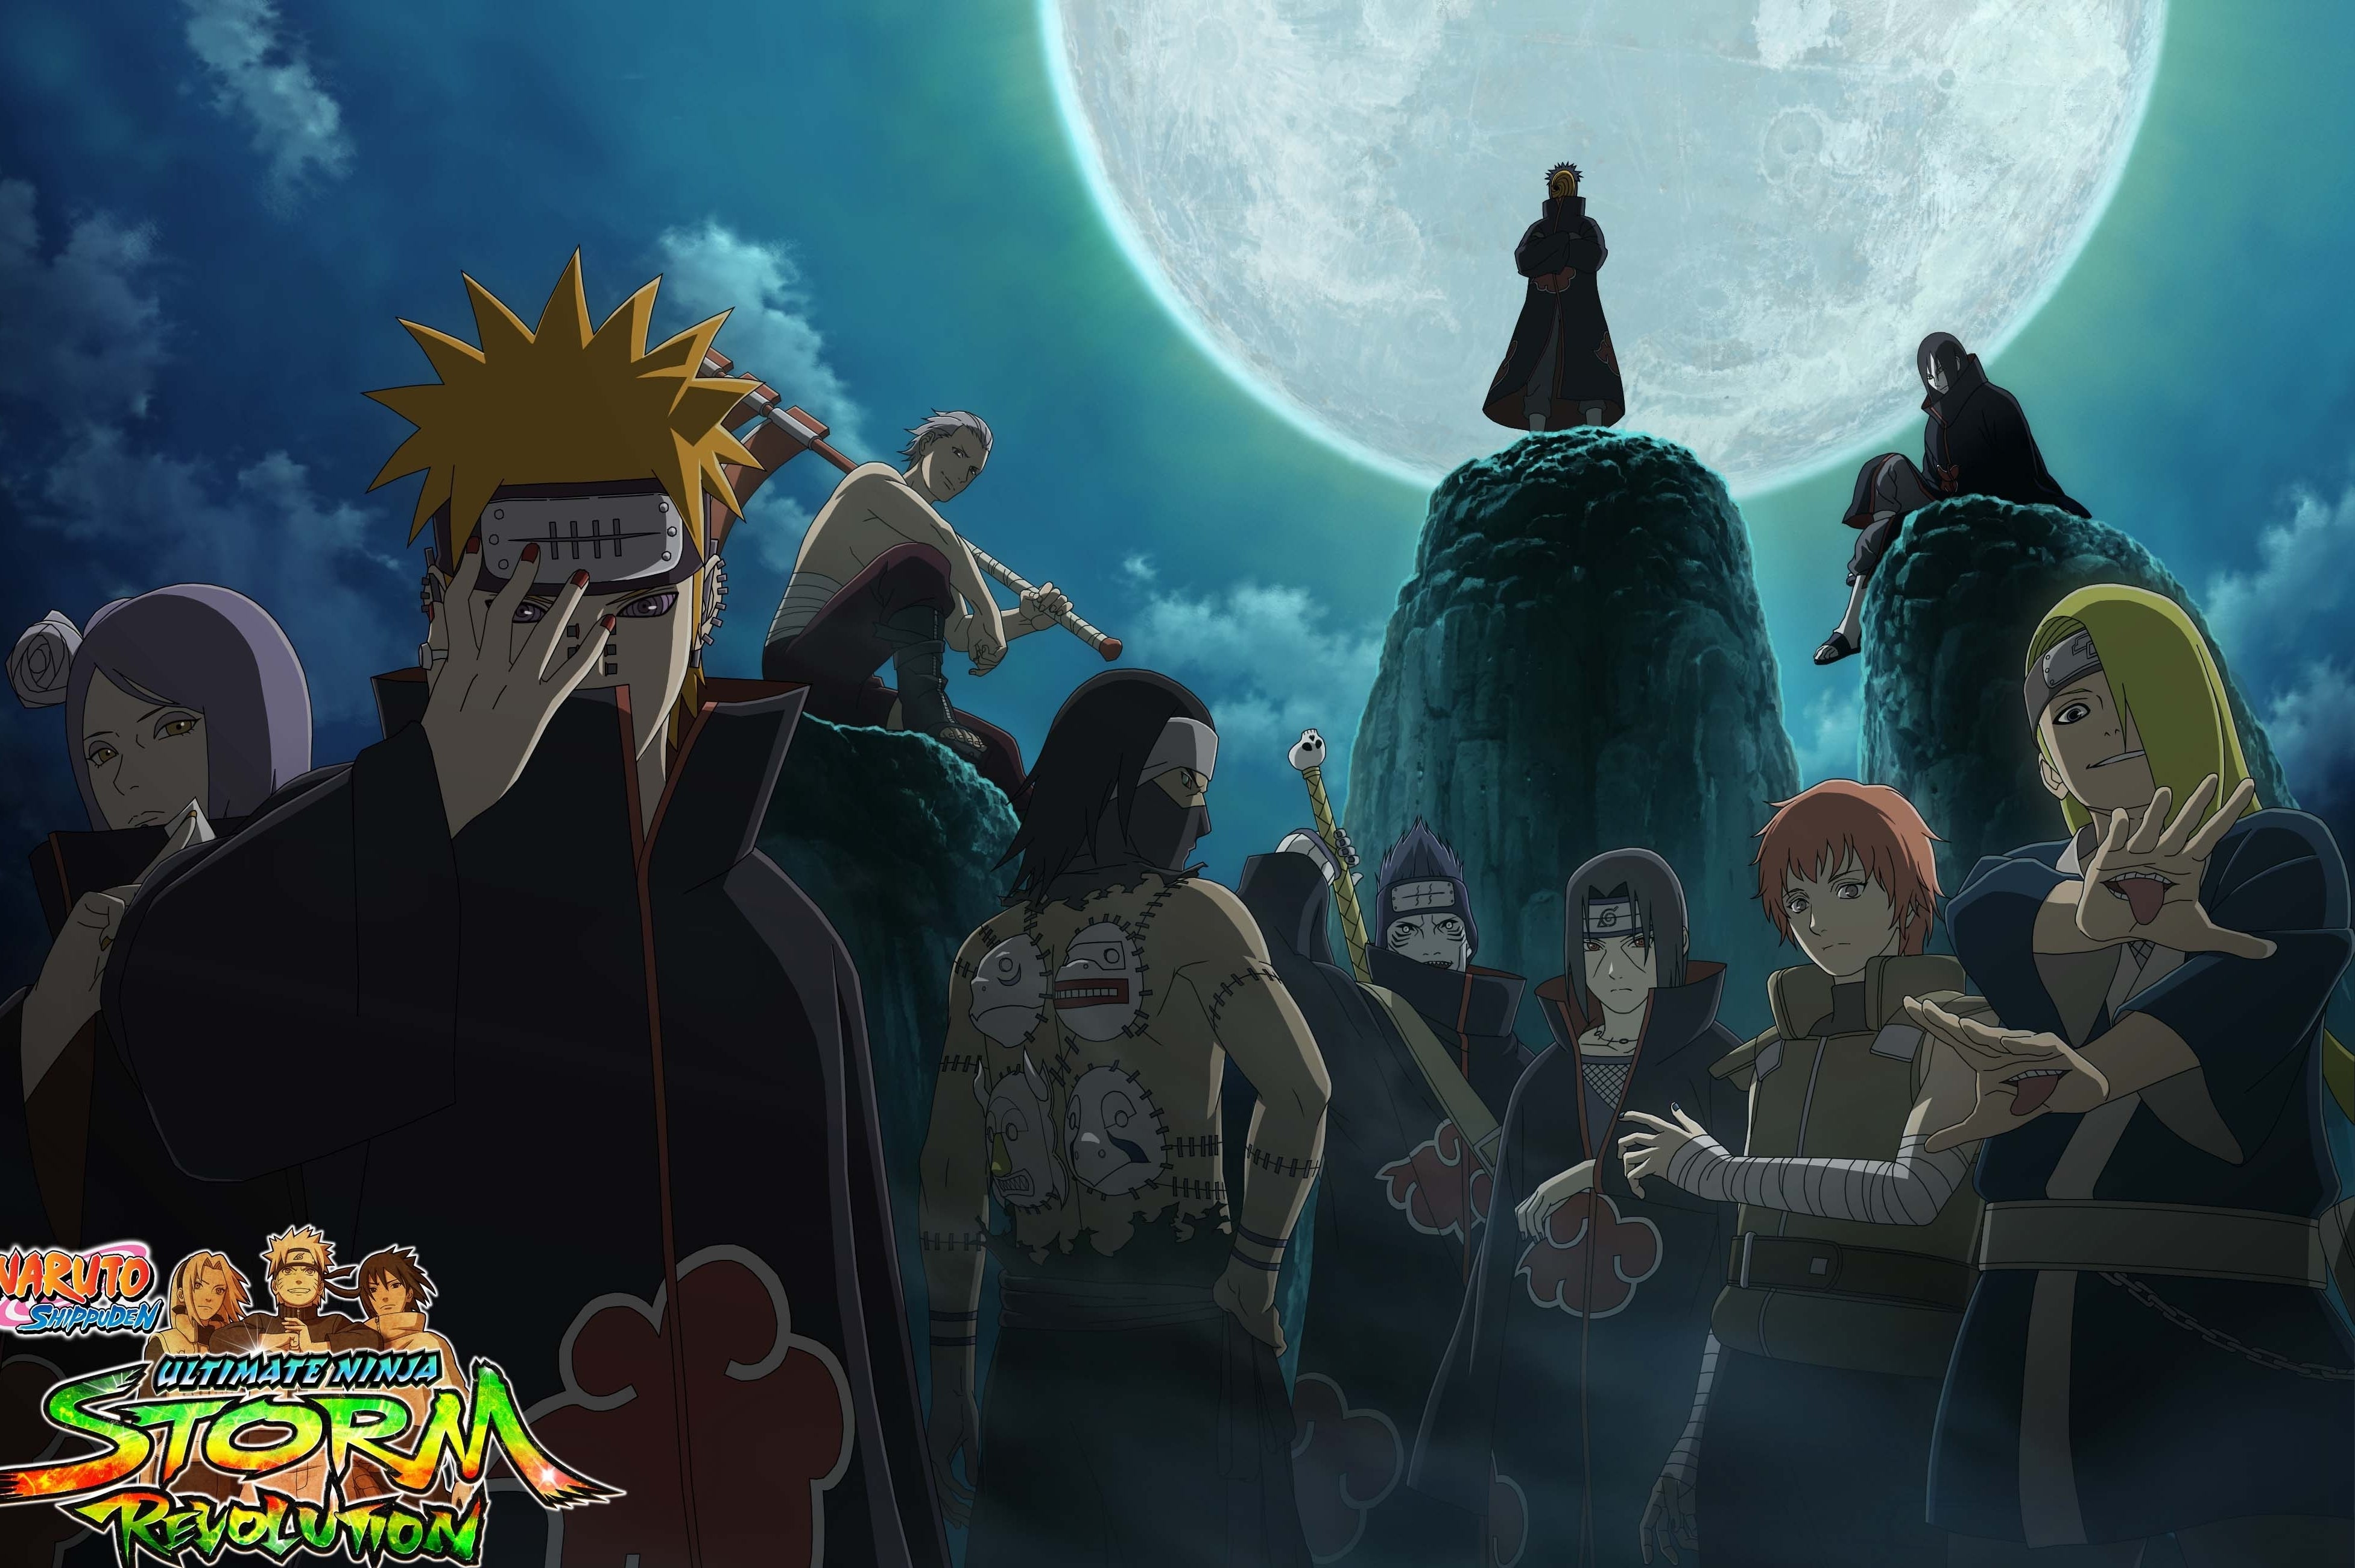 Immagine di Naruto Shippuden: UNS Revolution mostrerà le origini dell'Alba